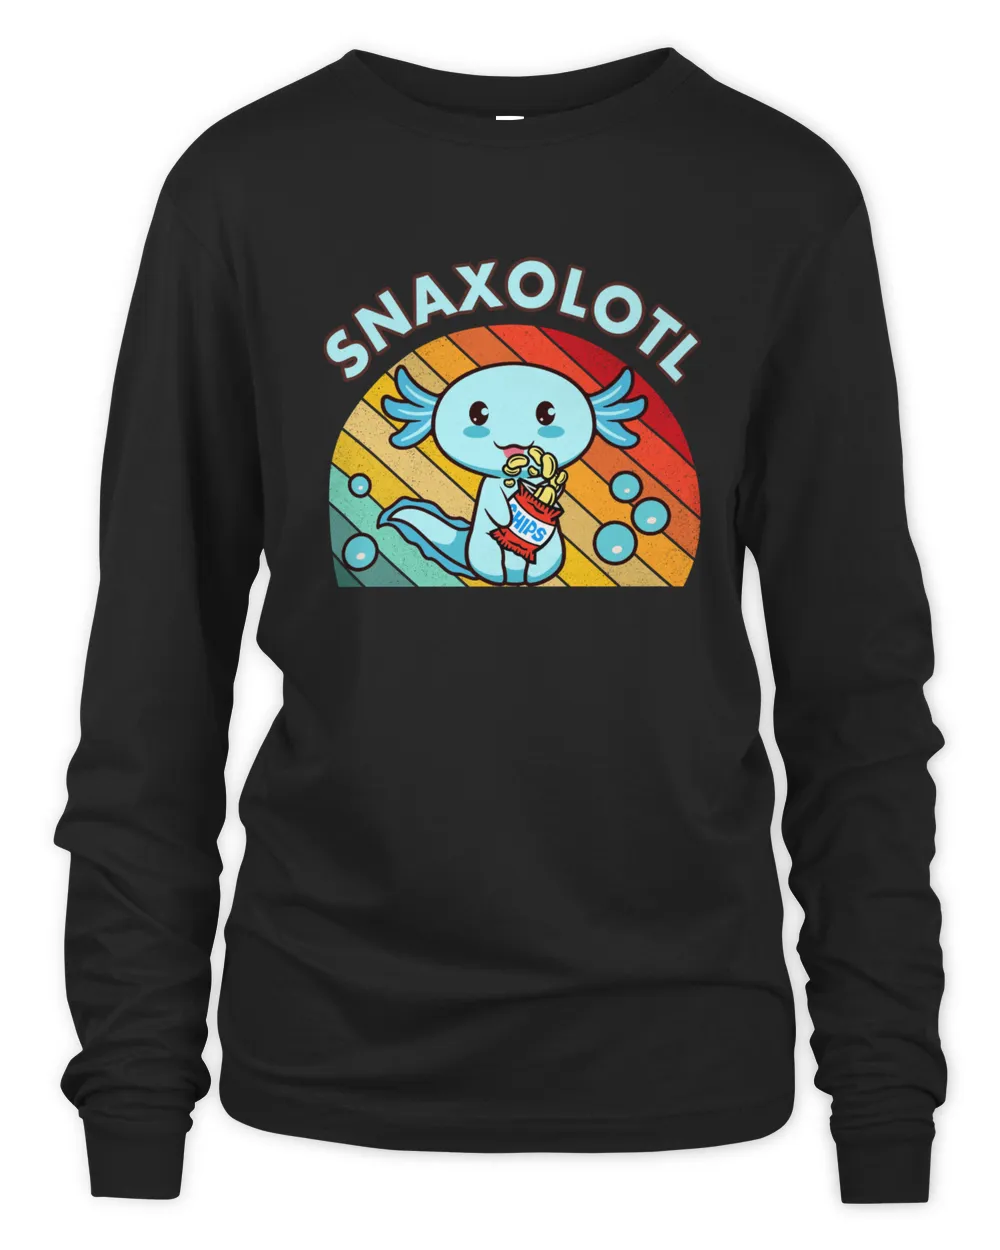 Snaxolotl Shirt Kids Youth Salamander Lizard Cute Axolotl T-Shirt